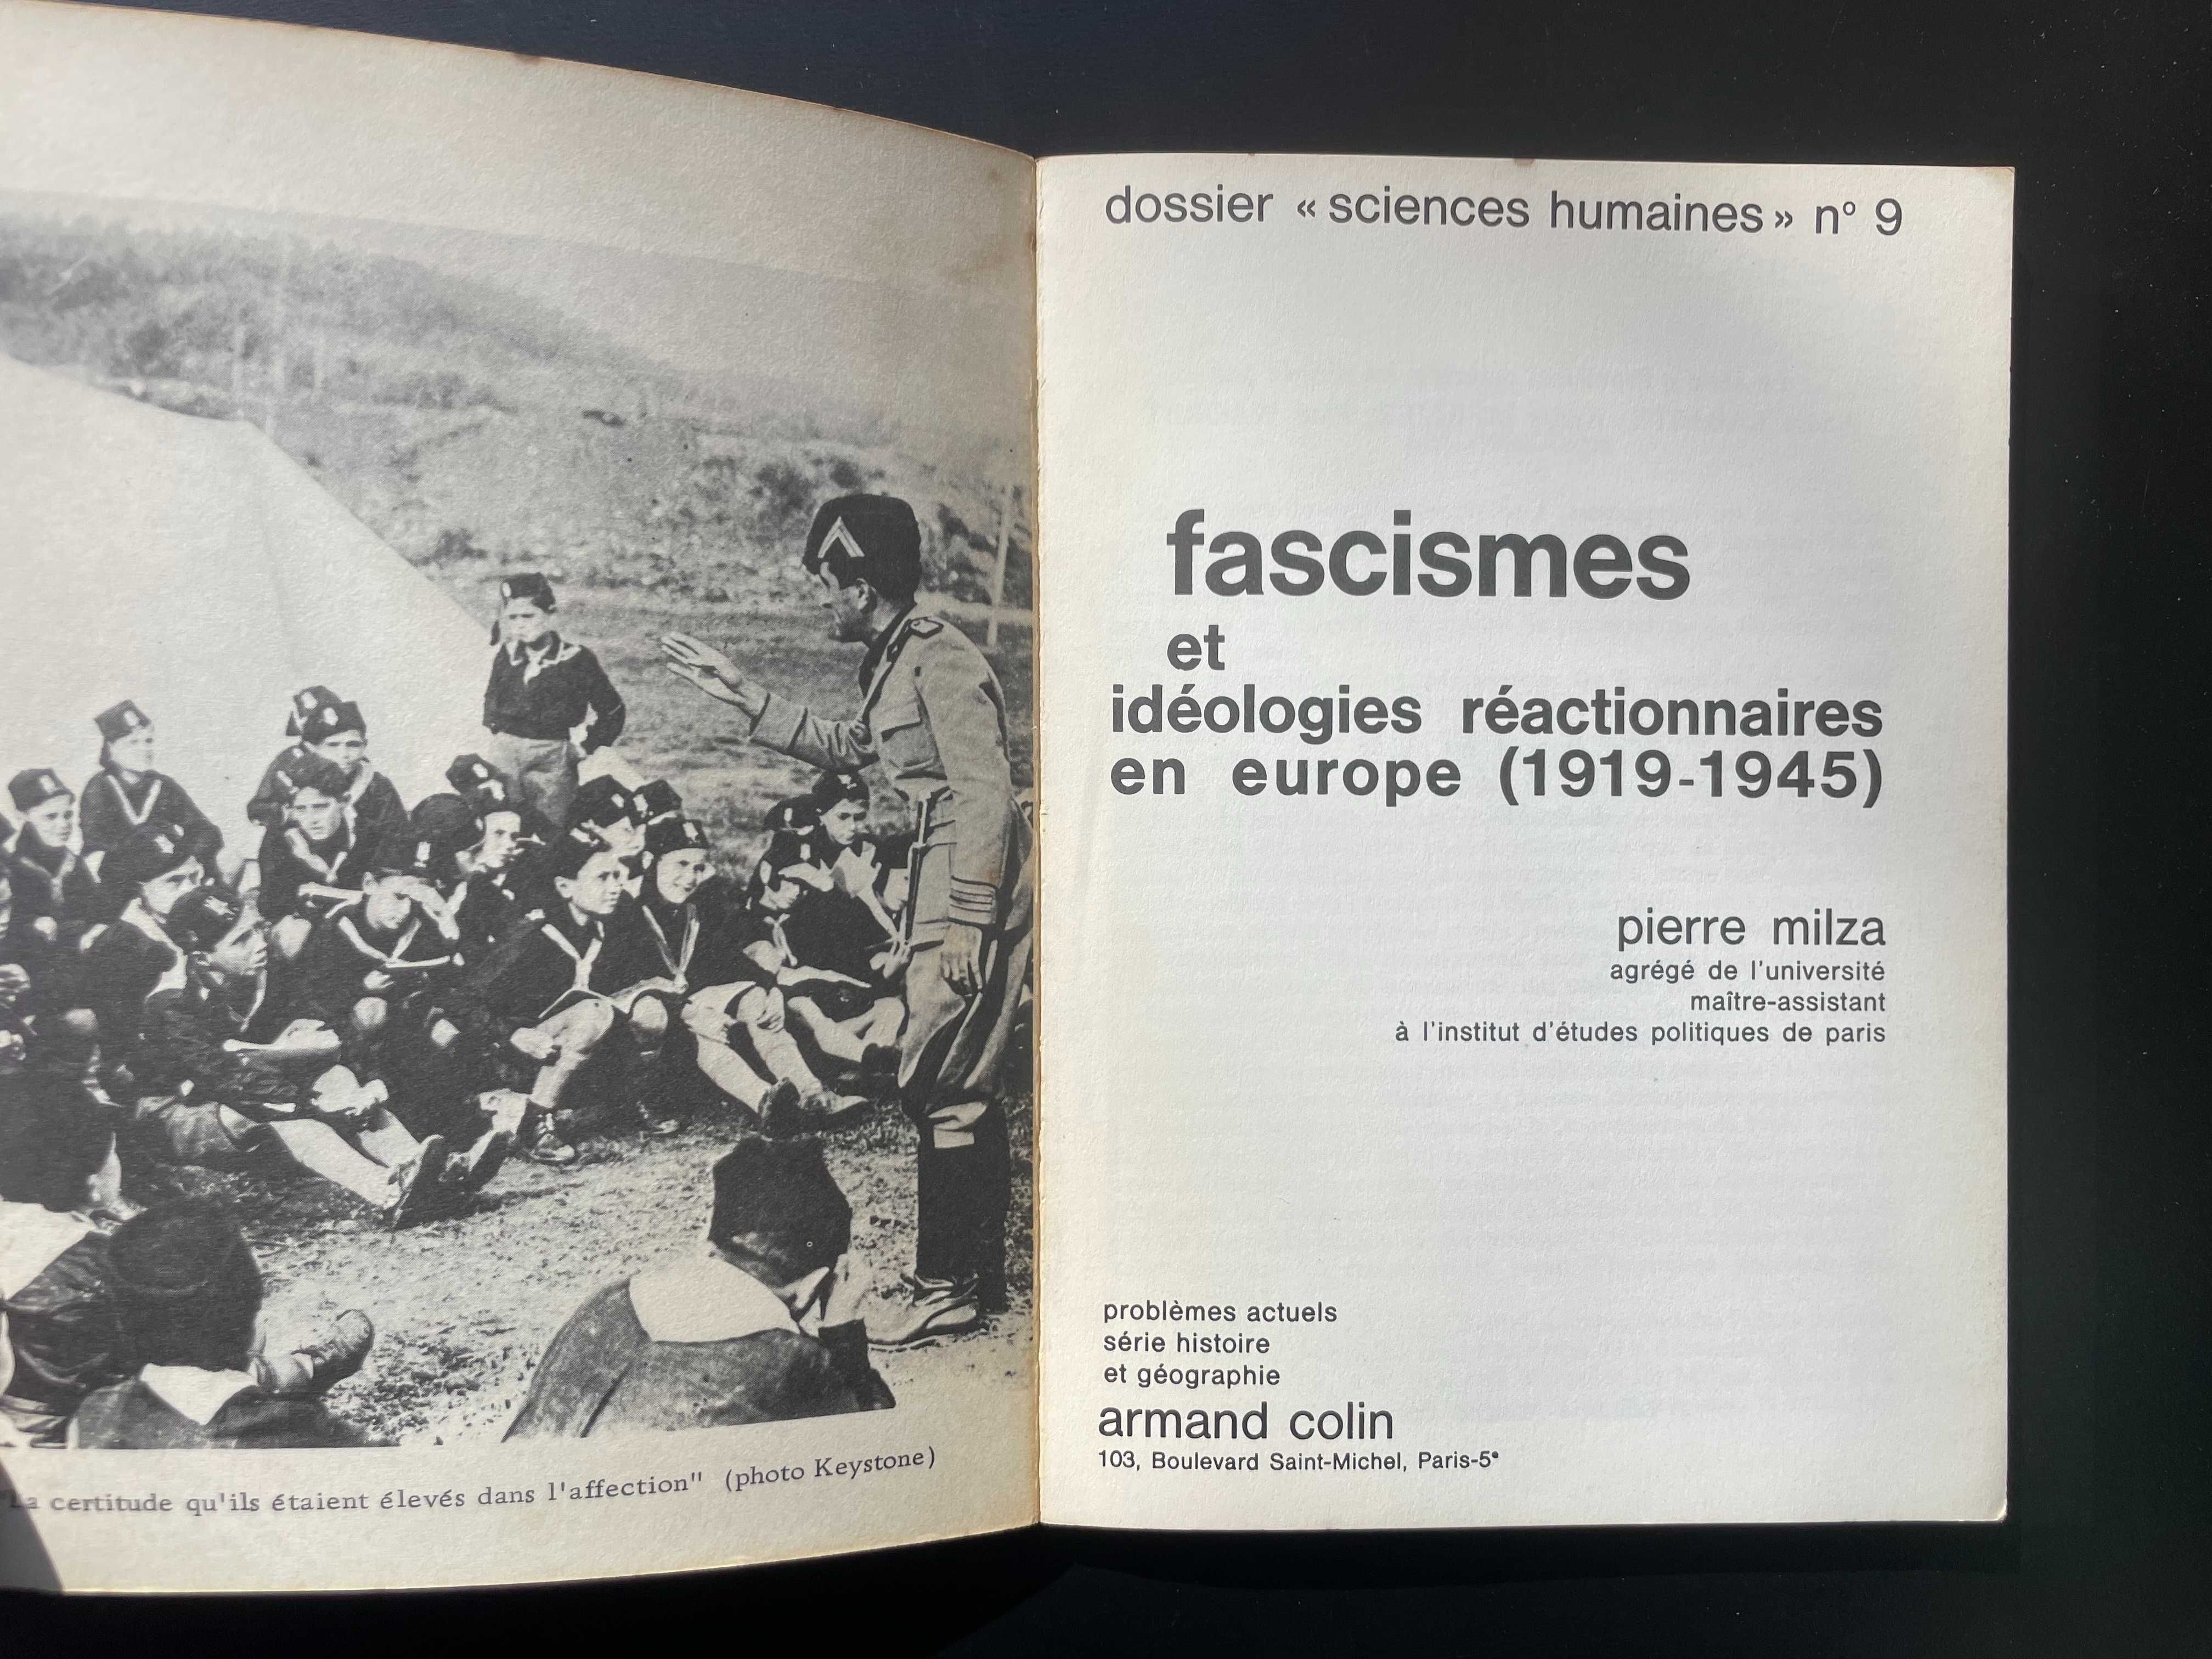 Fascismes et idéologies réactionnaires en europe -  Pierre Milza